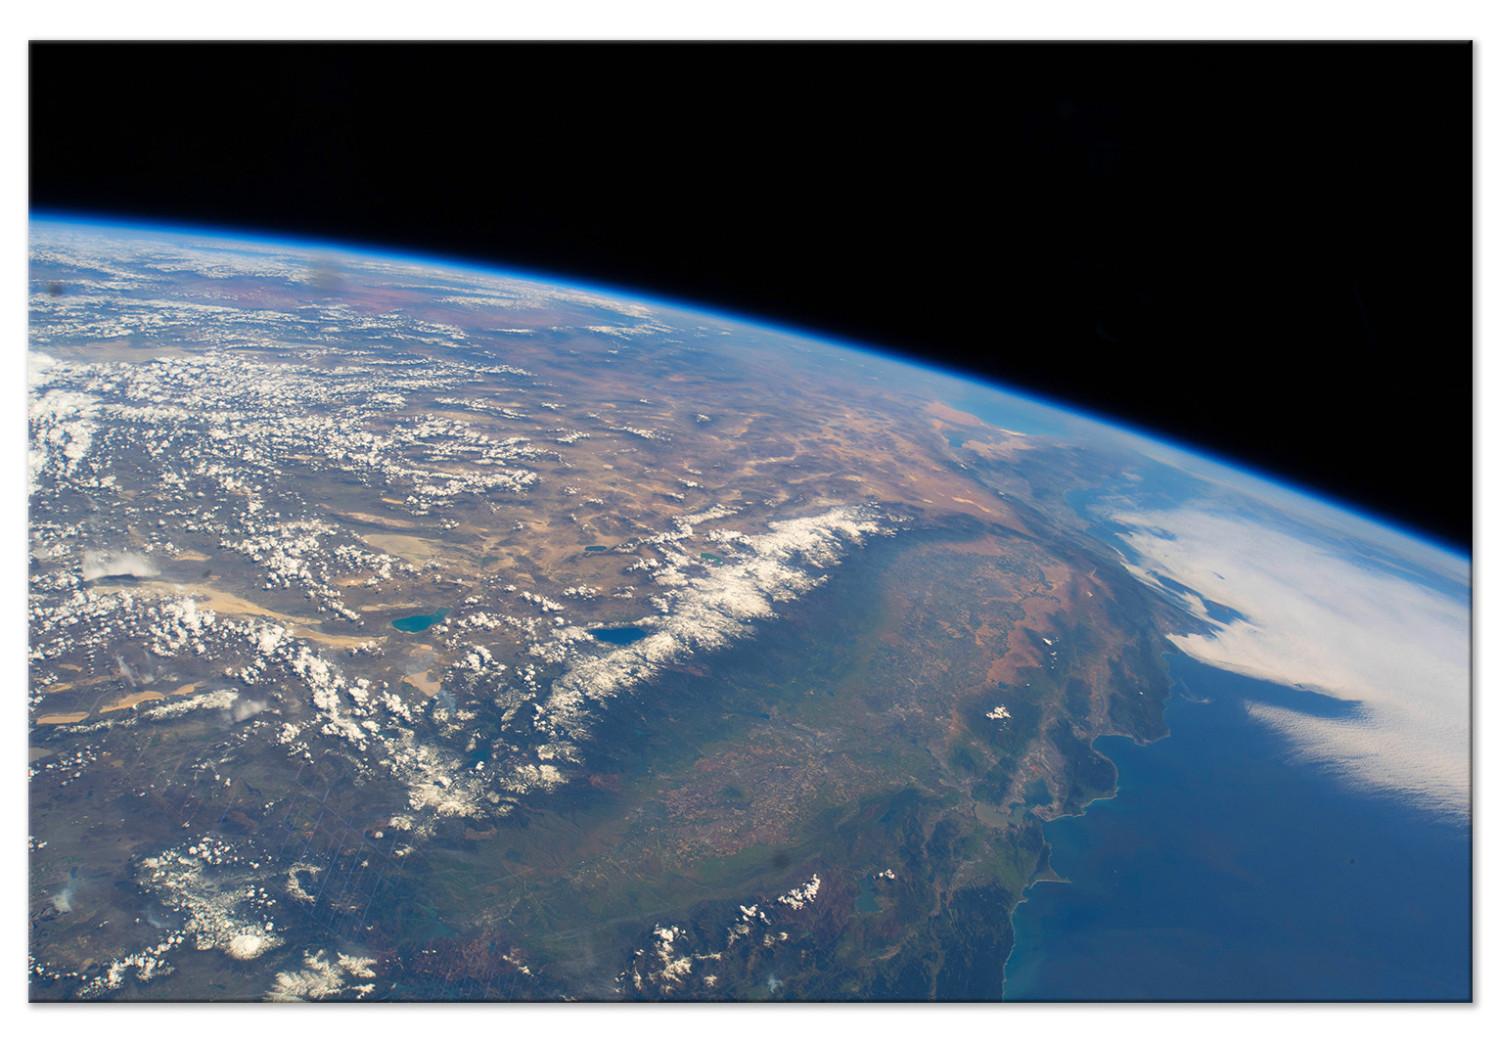 Cuadro decorativo Vista satelital del continente y océano - foto de Tierra desde espacio